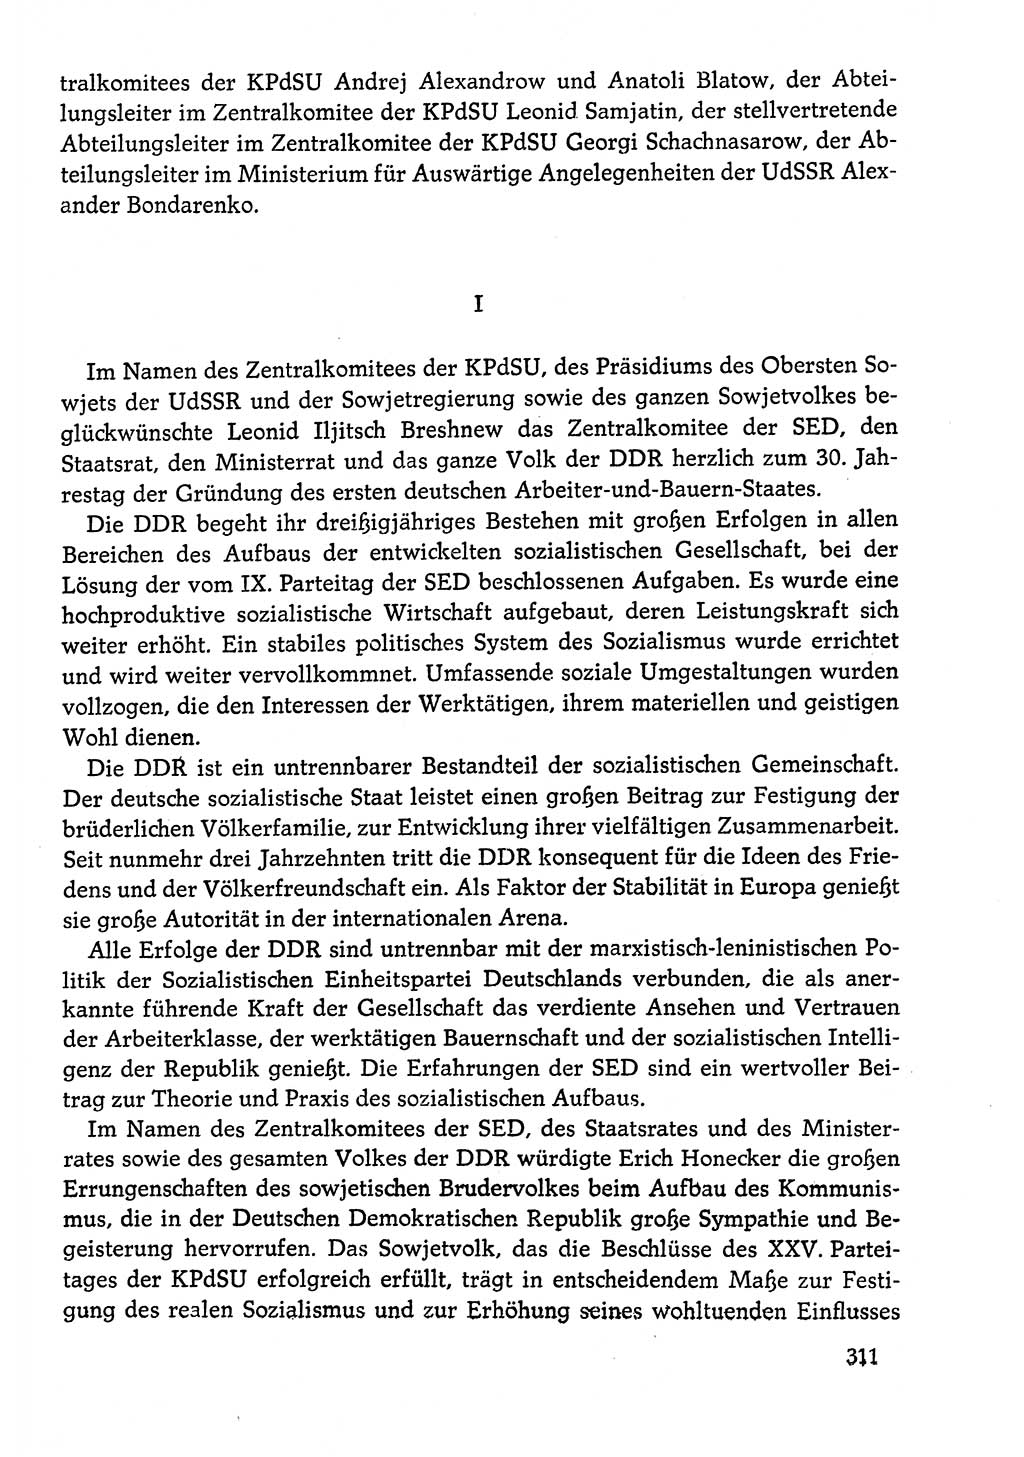 Dokumente der Sozialistischen Einheitspartei Deutschlands (SED) [Deutsche Demokratische Republik (DDR)] 1978-1979, Seite 311 (Dok. SED DDR 1978-1979, S. 311)